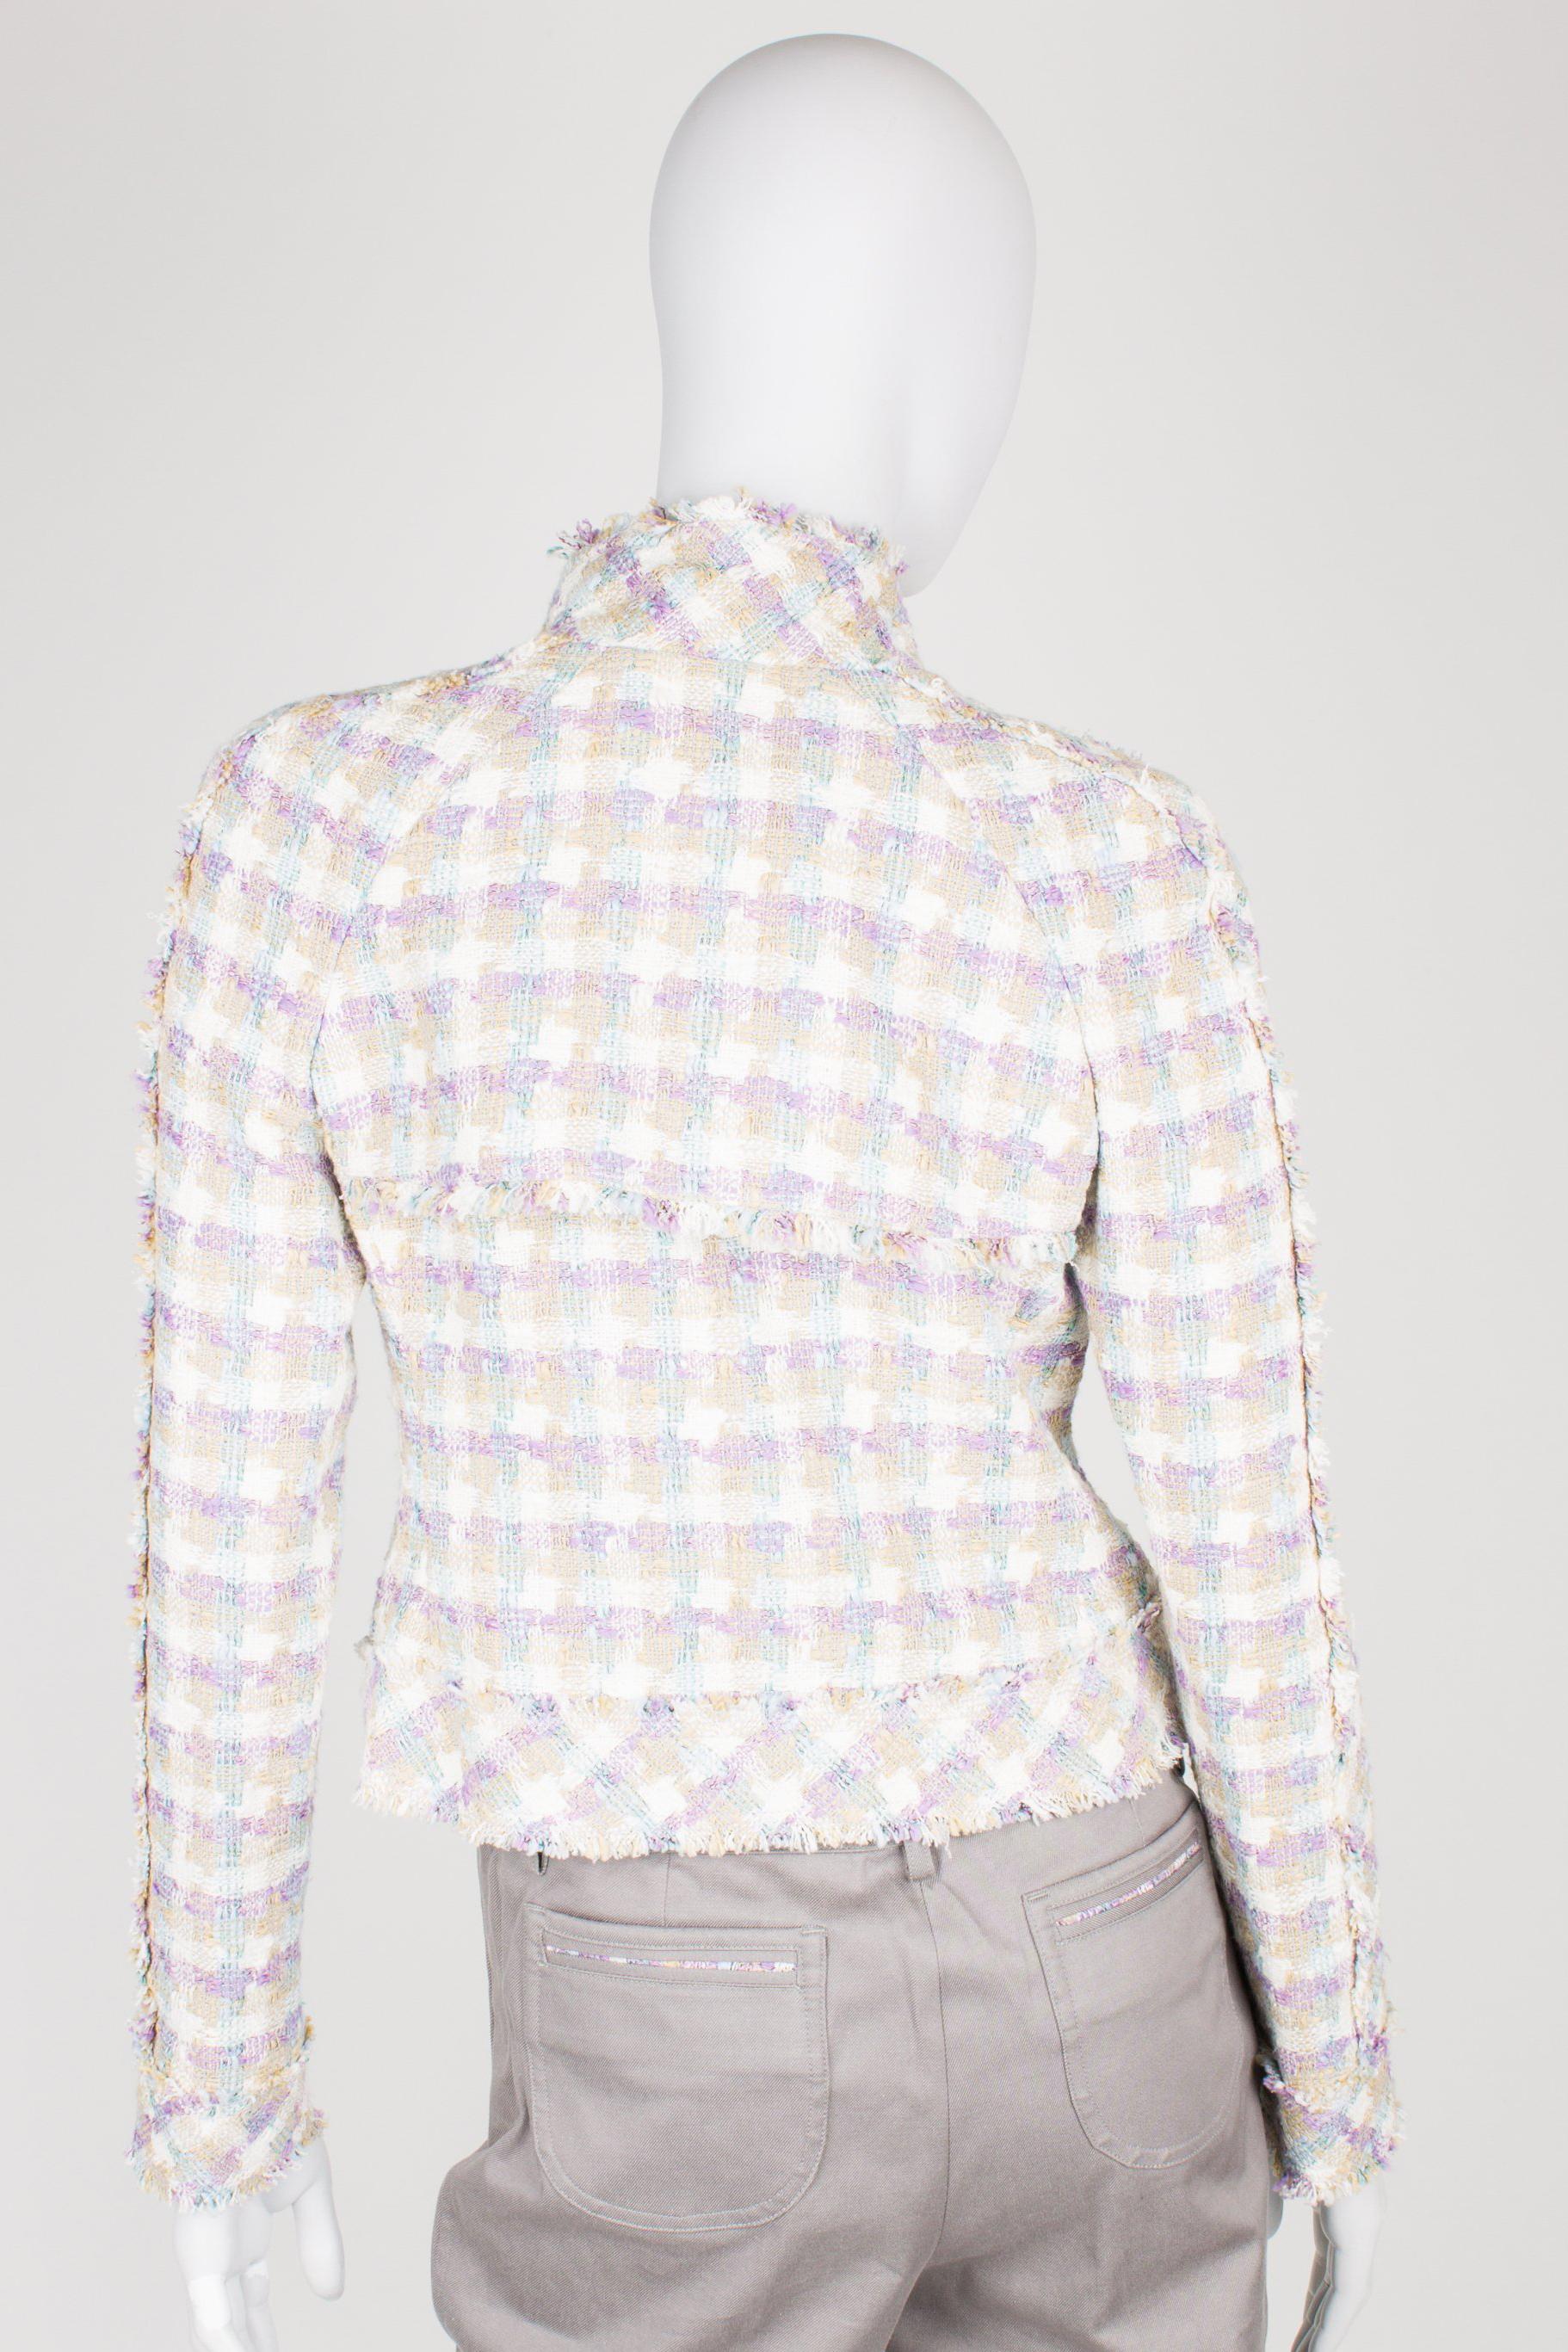 Chanel 4-pcs Suit Jacket, Skirt, Pants & Top - lilac/beige/blue/white 2005 For Sale 2